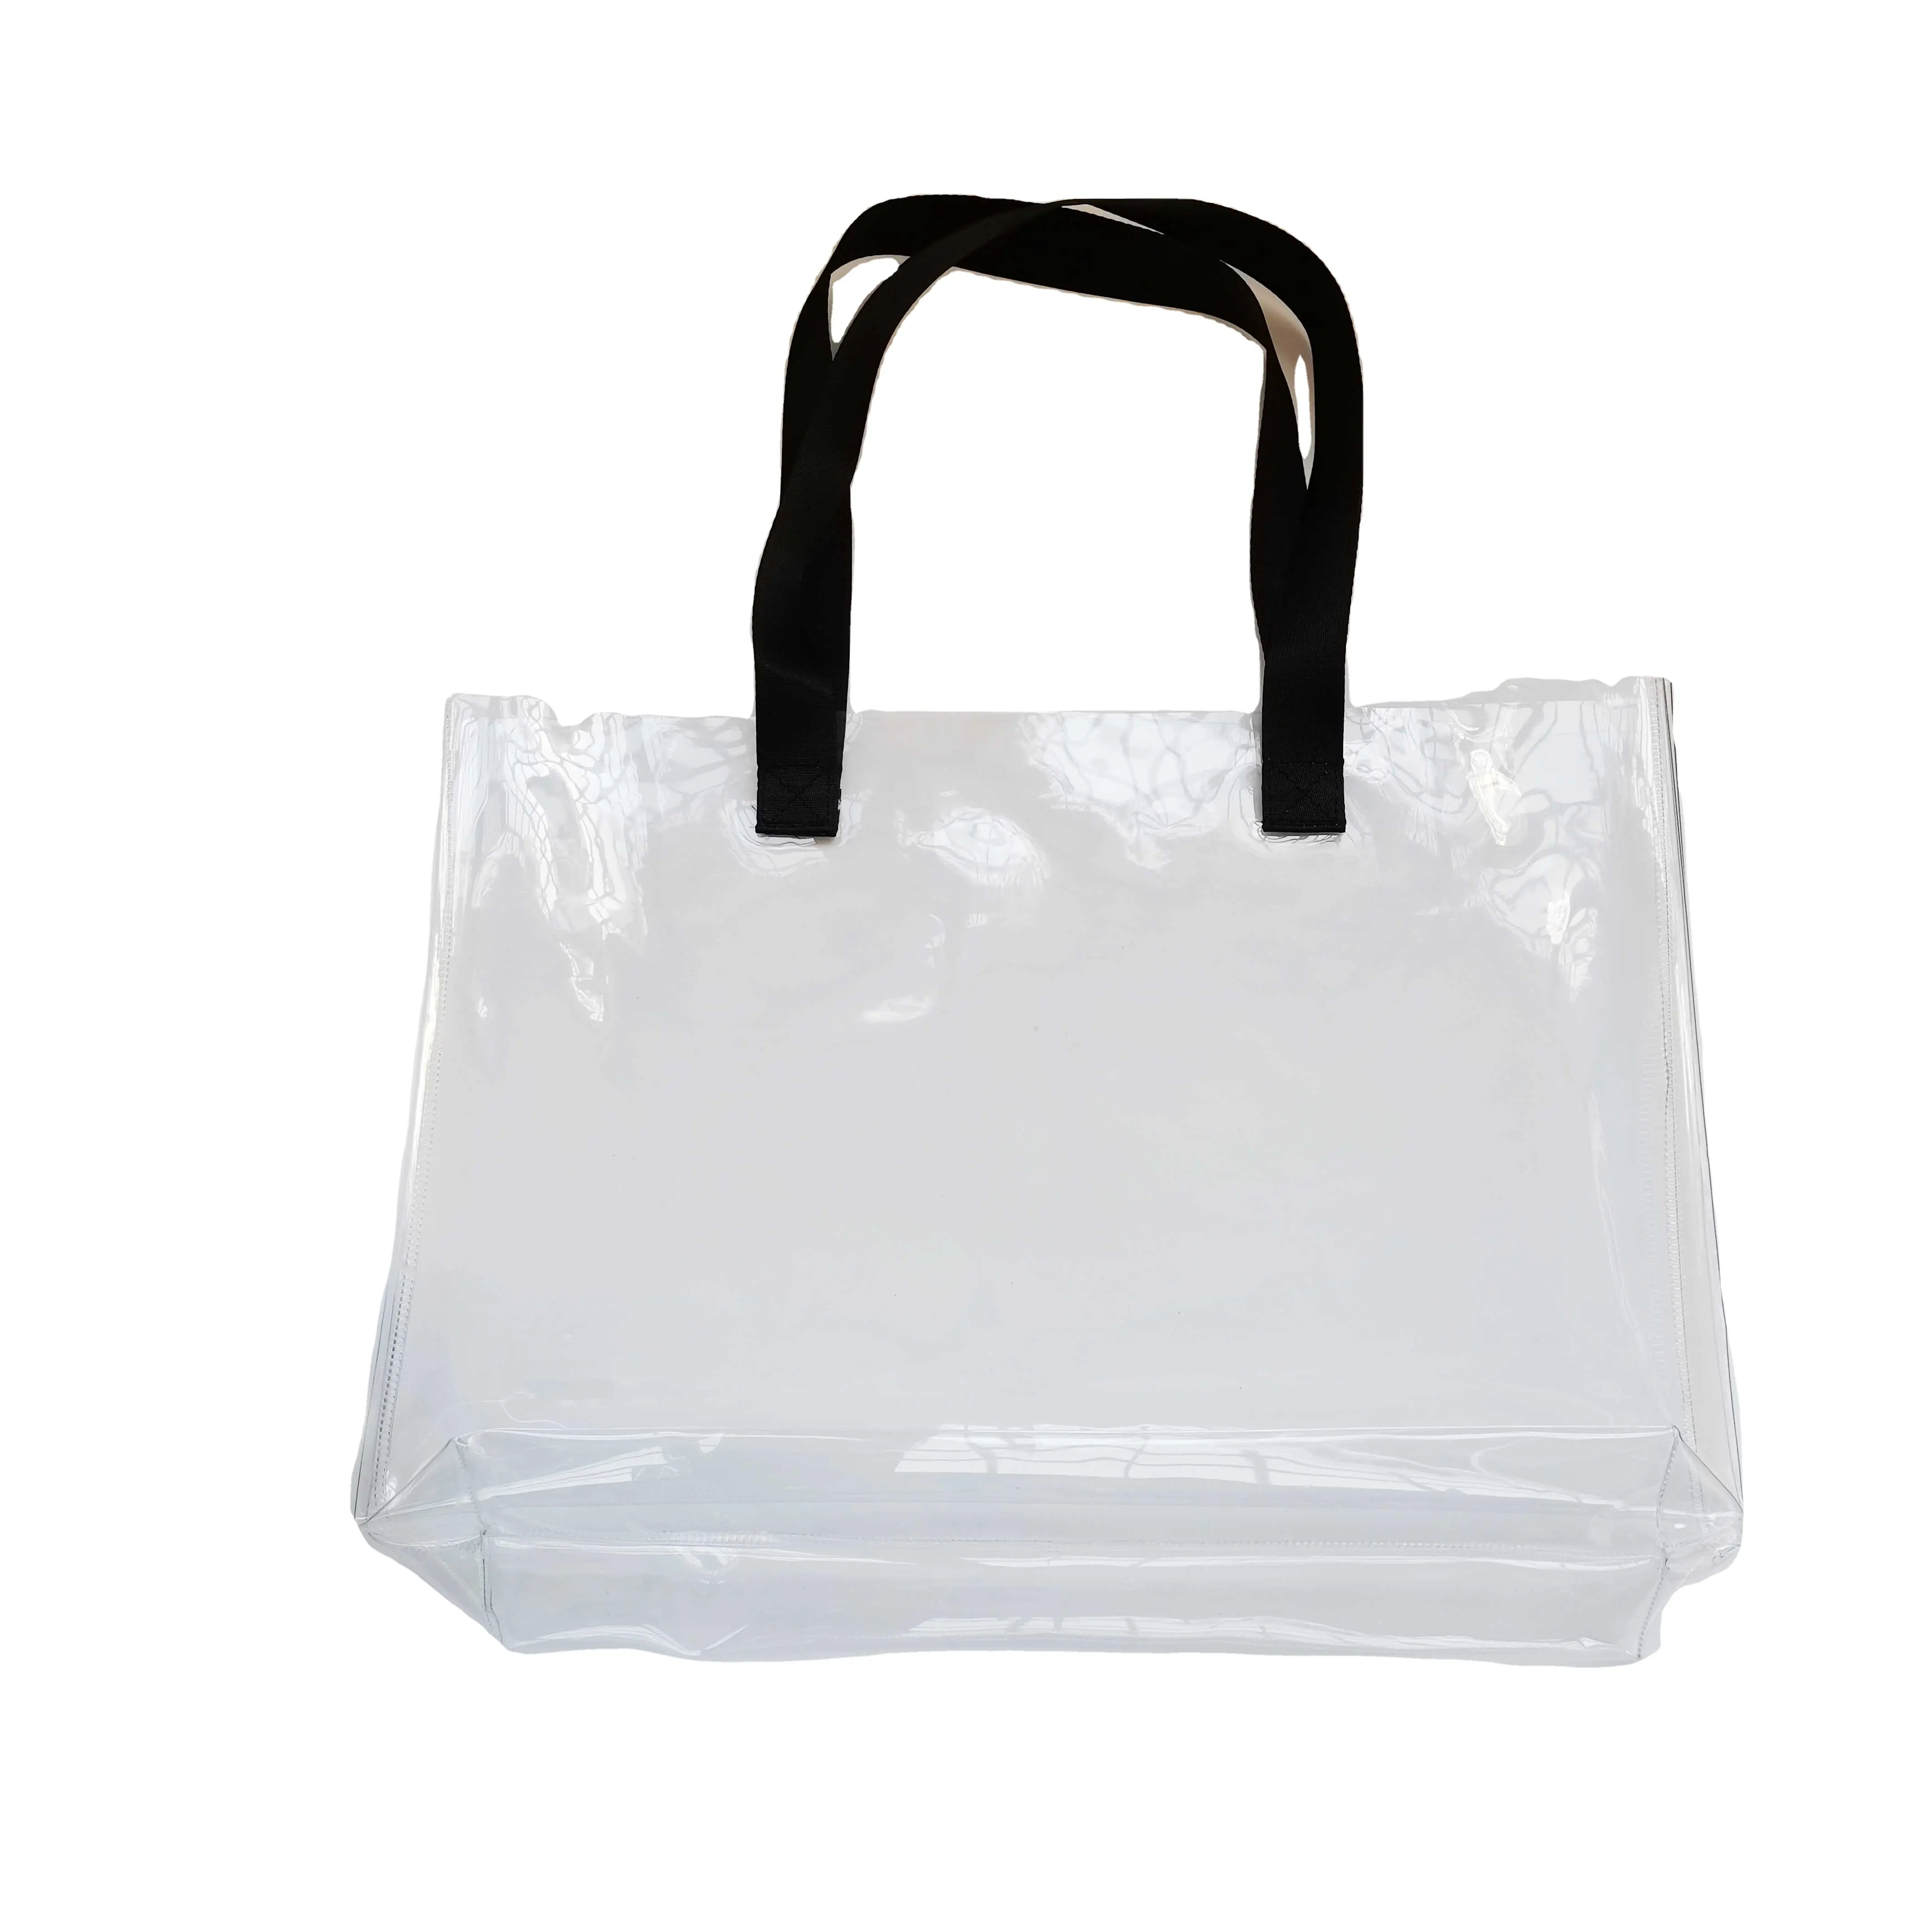 スタジアム承認環境レディファッション透明ビニールPVCトートバッグクリアラージビーチバッグ